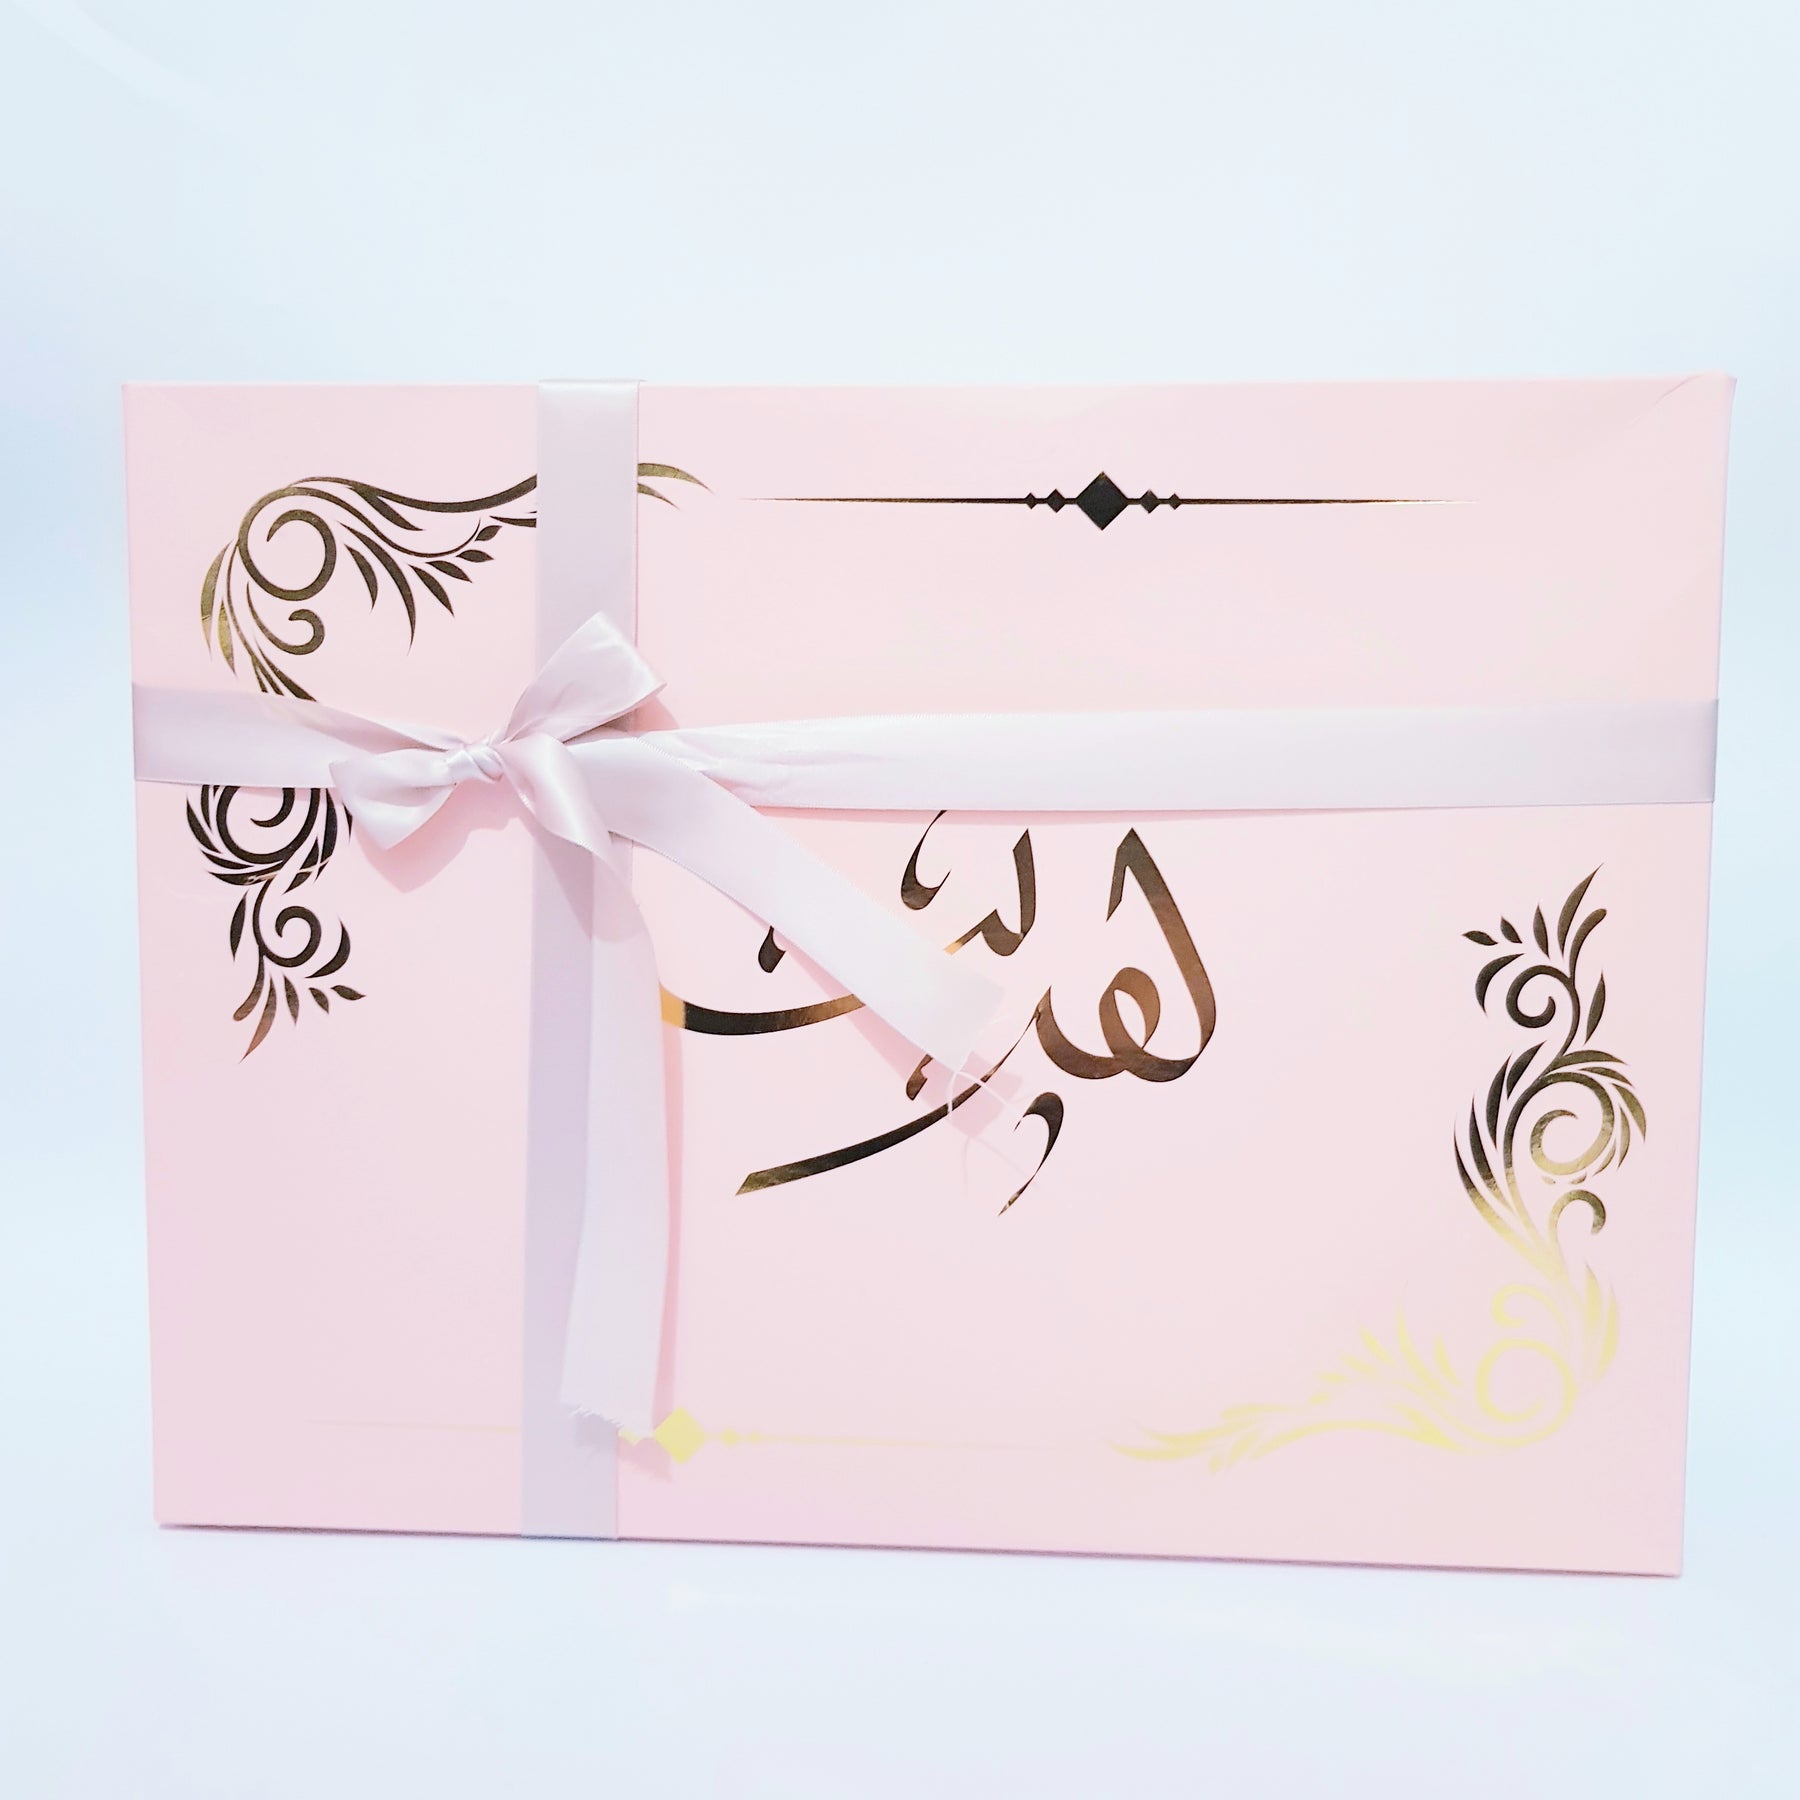 Box Amour by My Sajada- Pour un Amour Éternel-Coffret cadeau coran